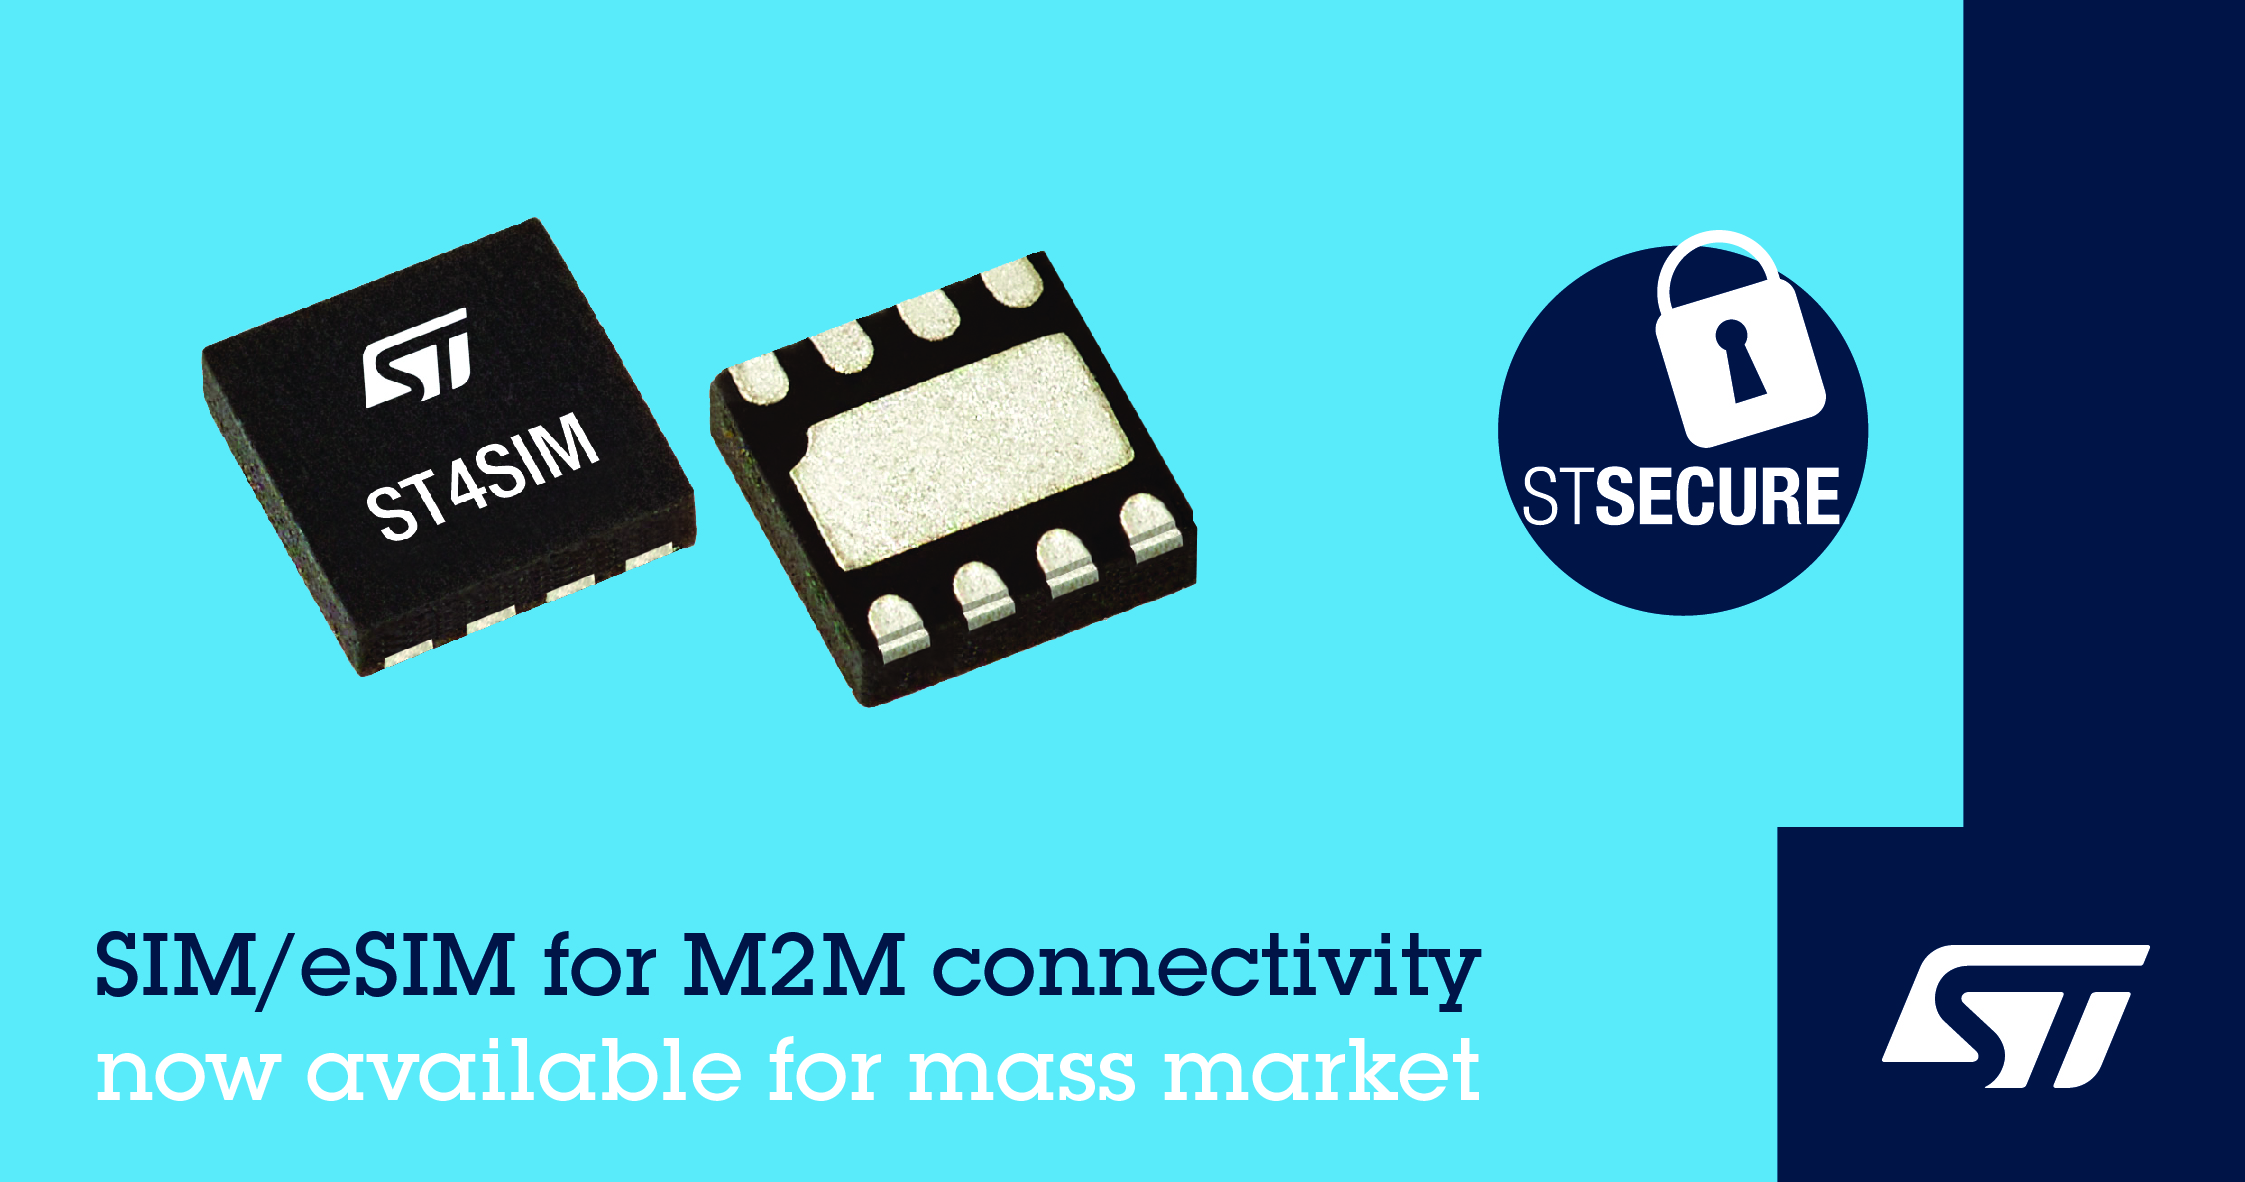 意法半導體向大眾市場推出ST4SIM M2M用兼容GSMA的eSIM卡芯片